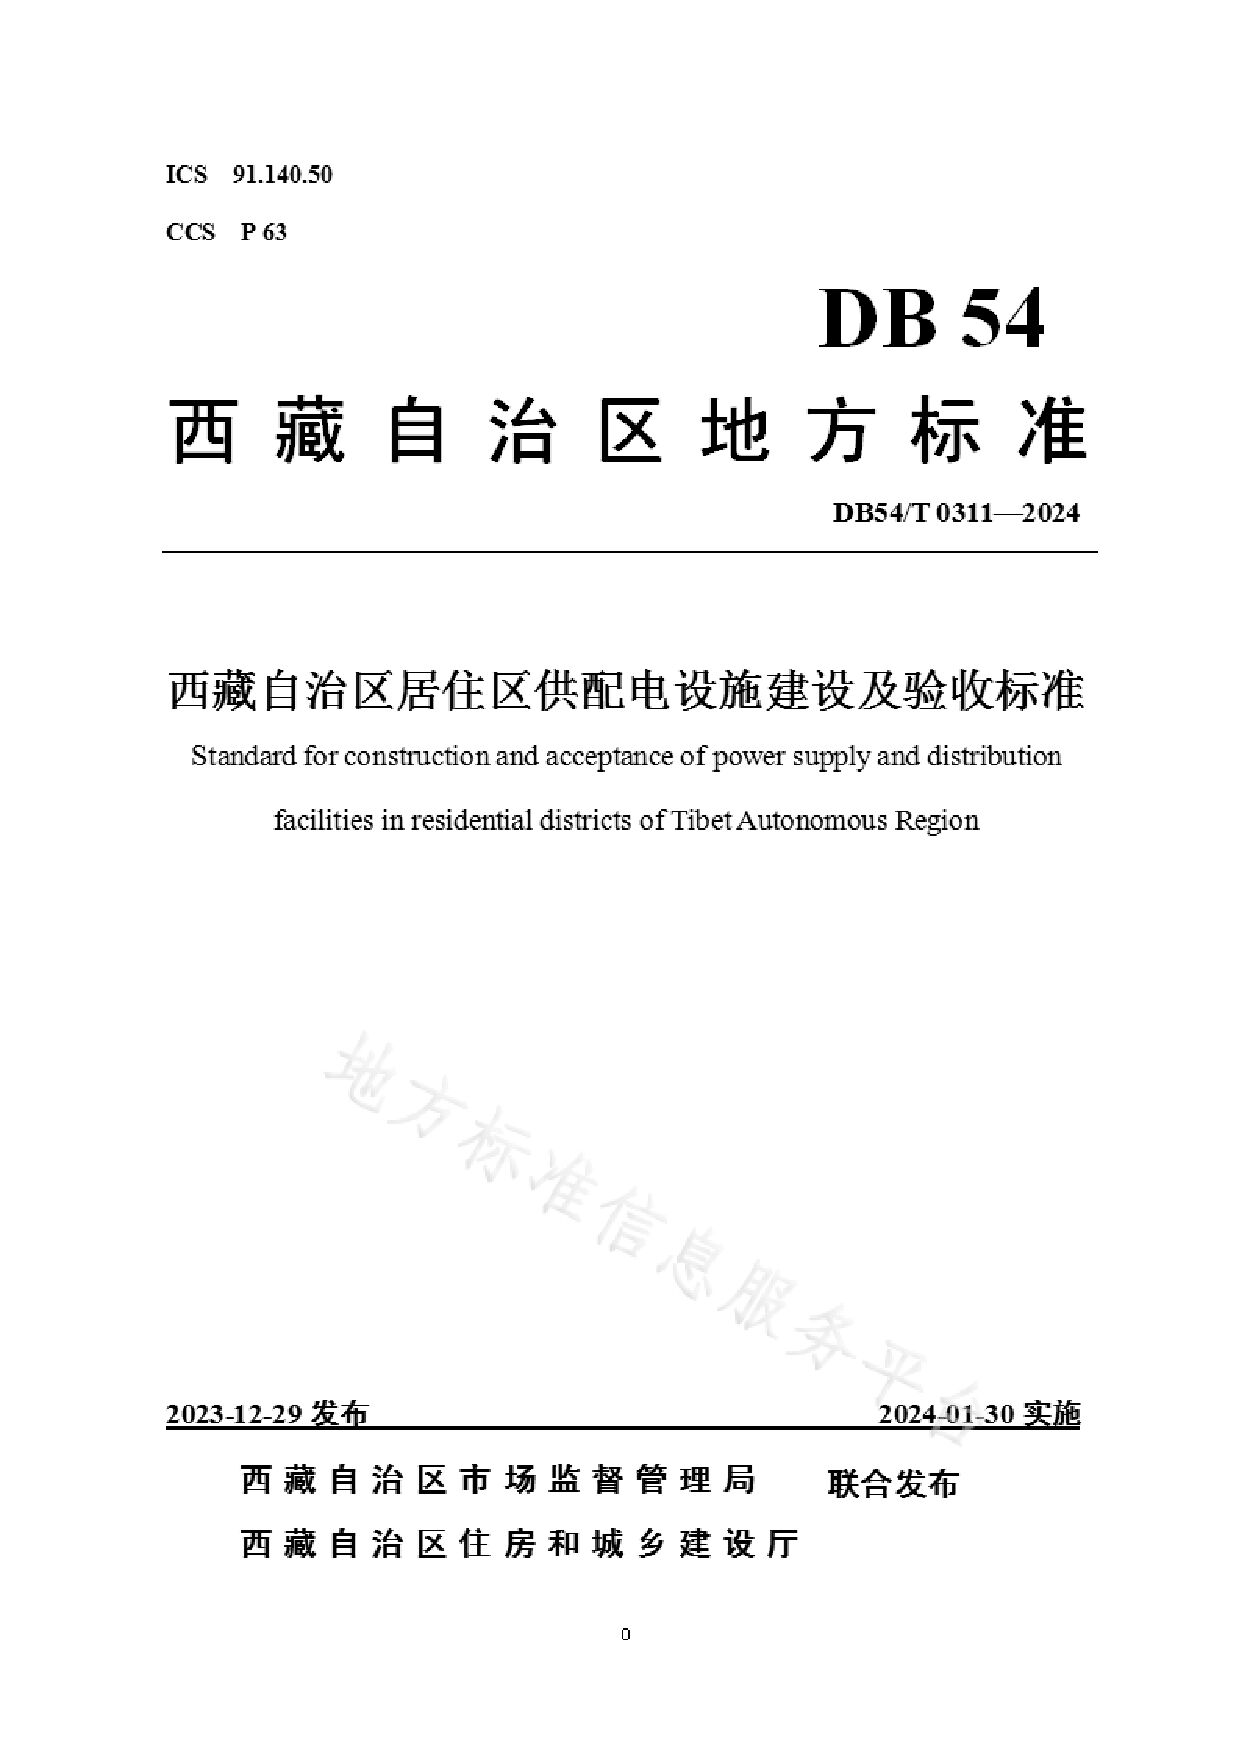 DB54/T 0311-2023封面图